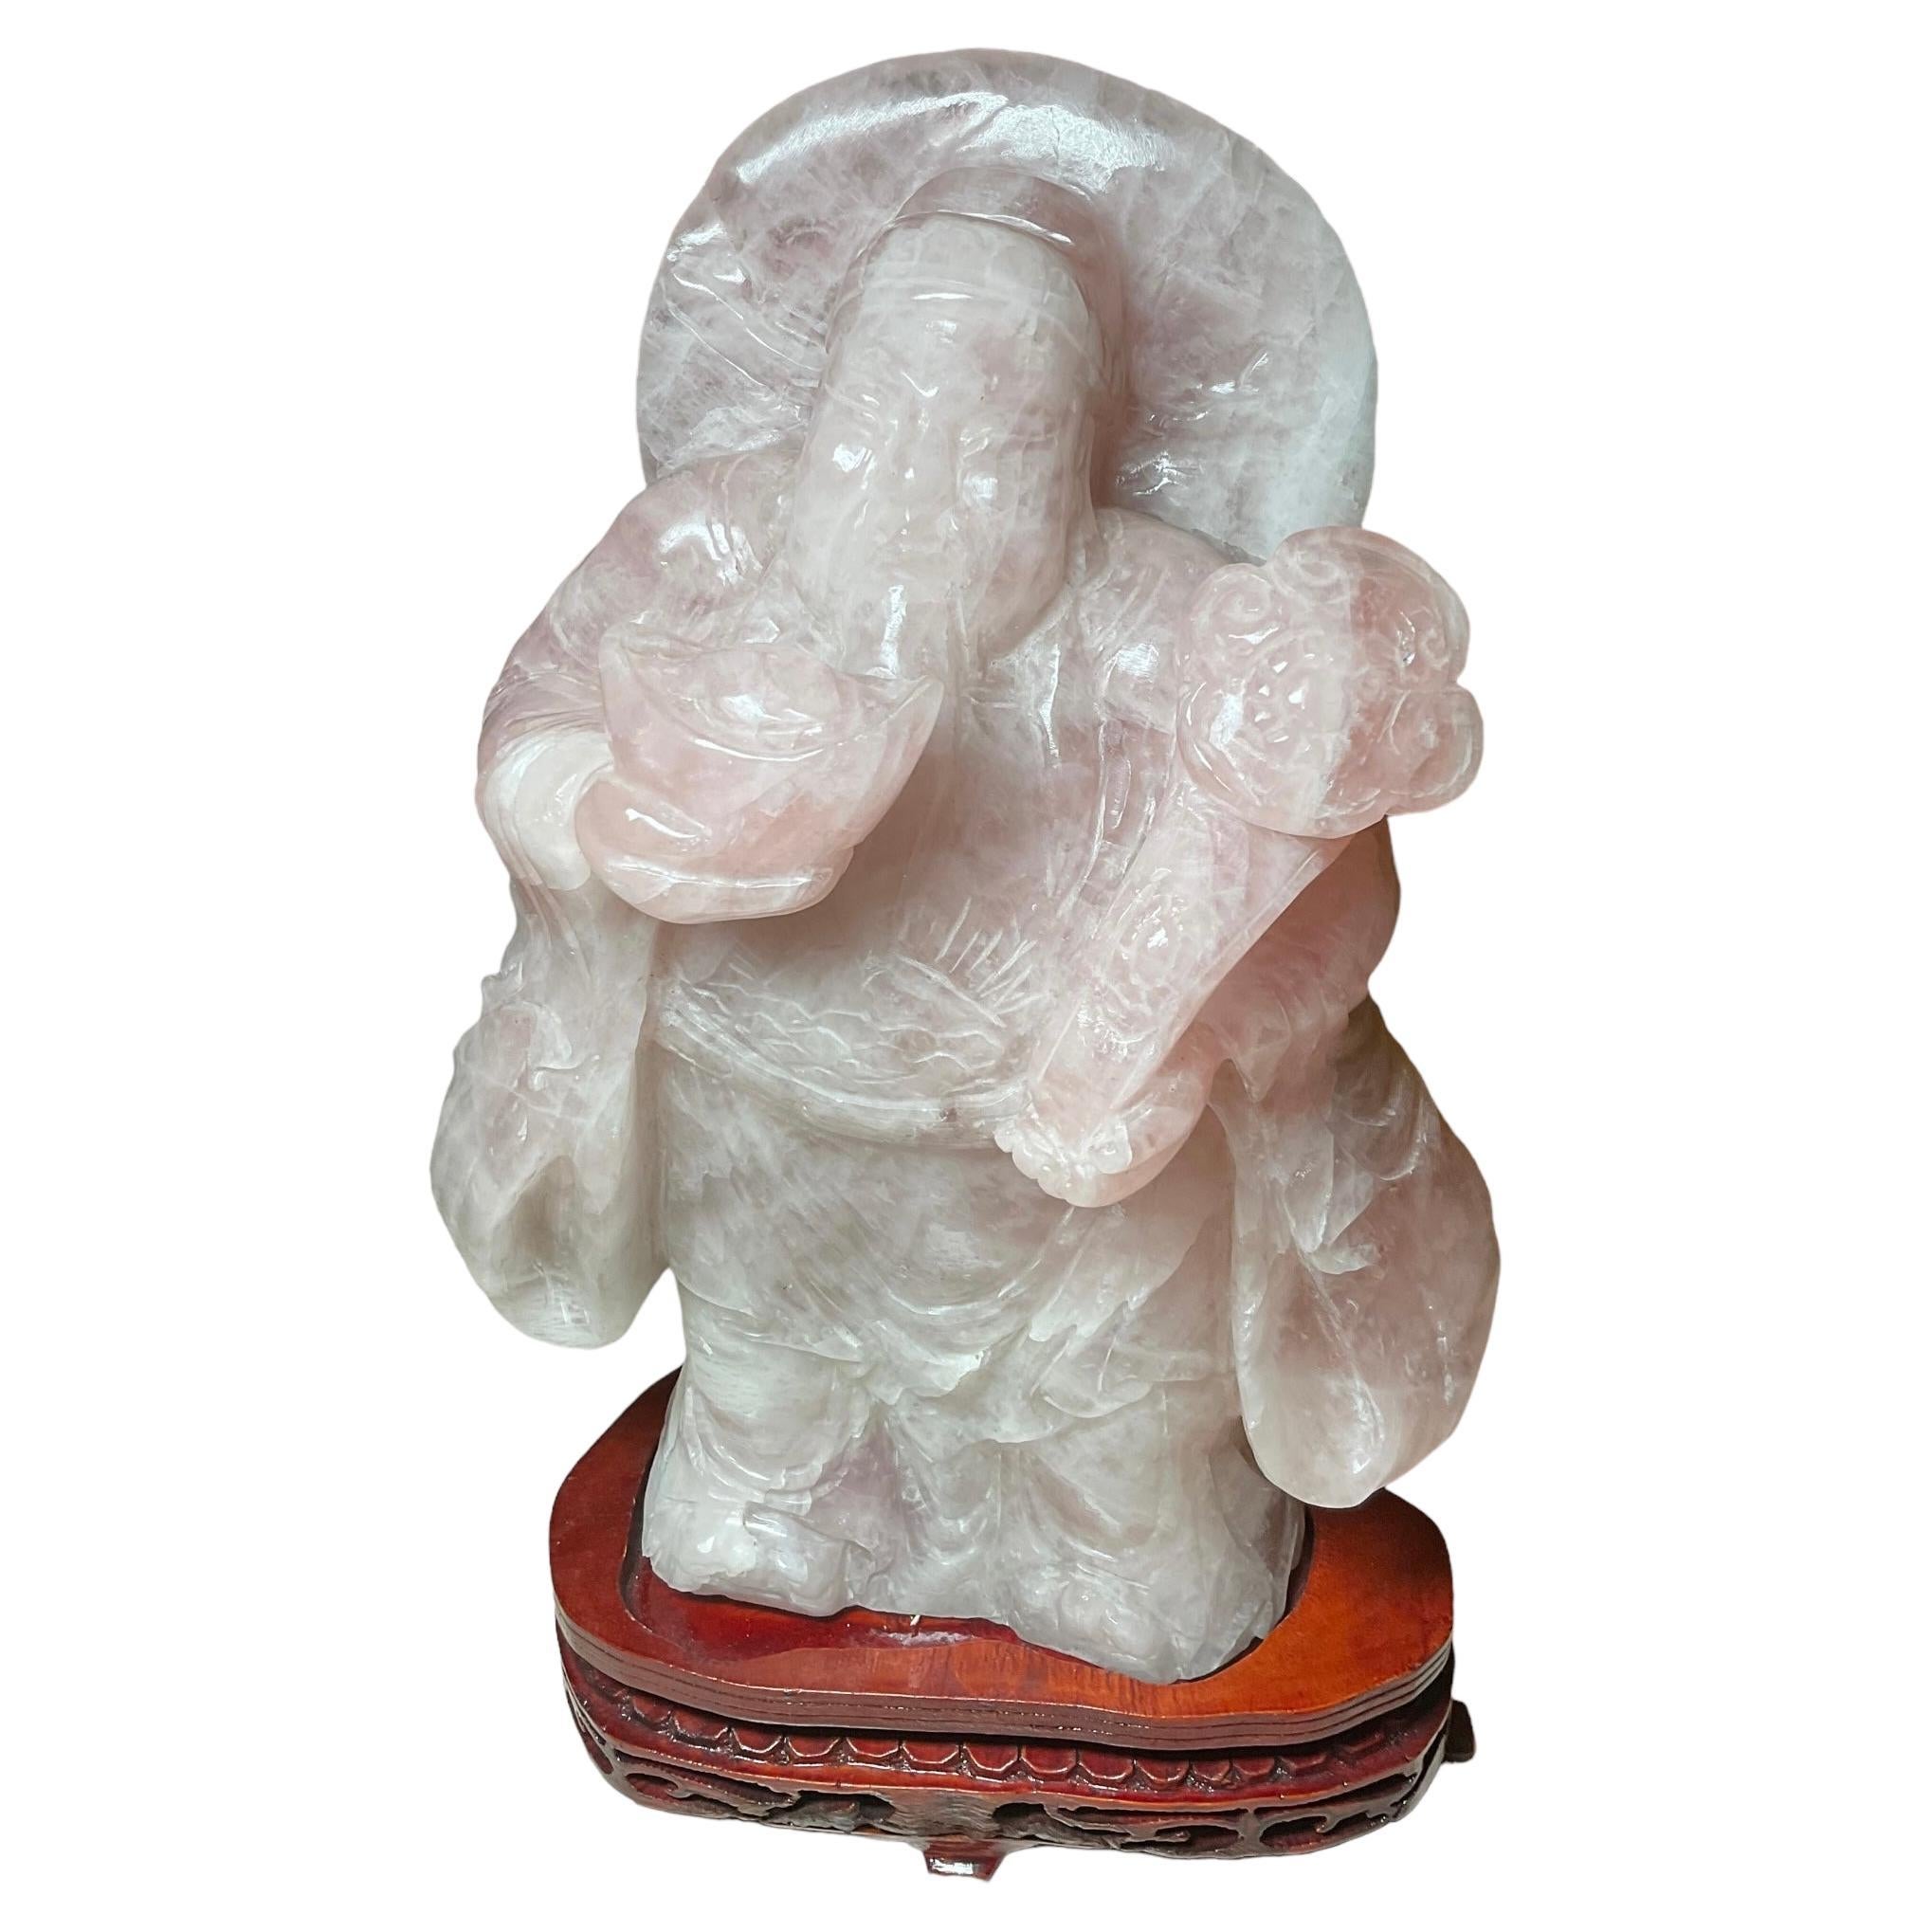 Il s'agit d'une sculpture en quartz rose représentant un Chinois tenant un sceptre ruyi. La sculpture repose sur une base ovale asymétrique ornée de rinceaux sculptés et d'un motif festonné.